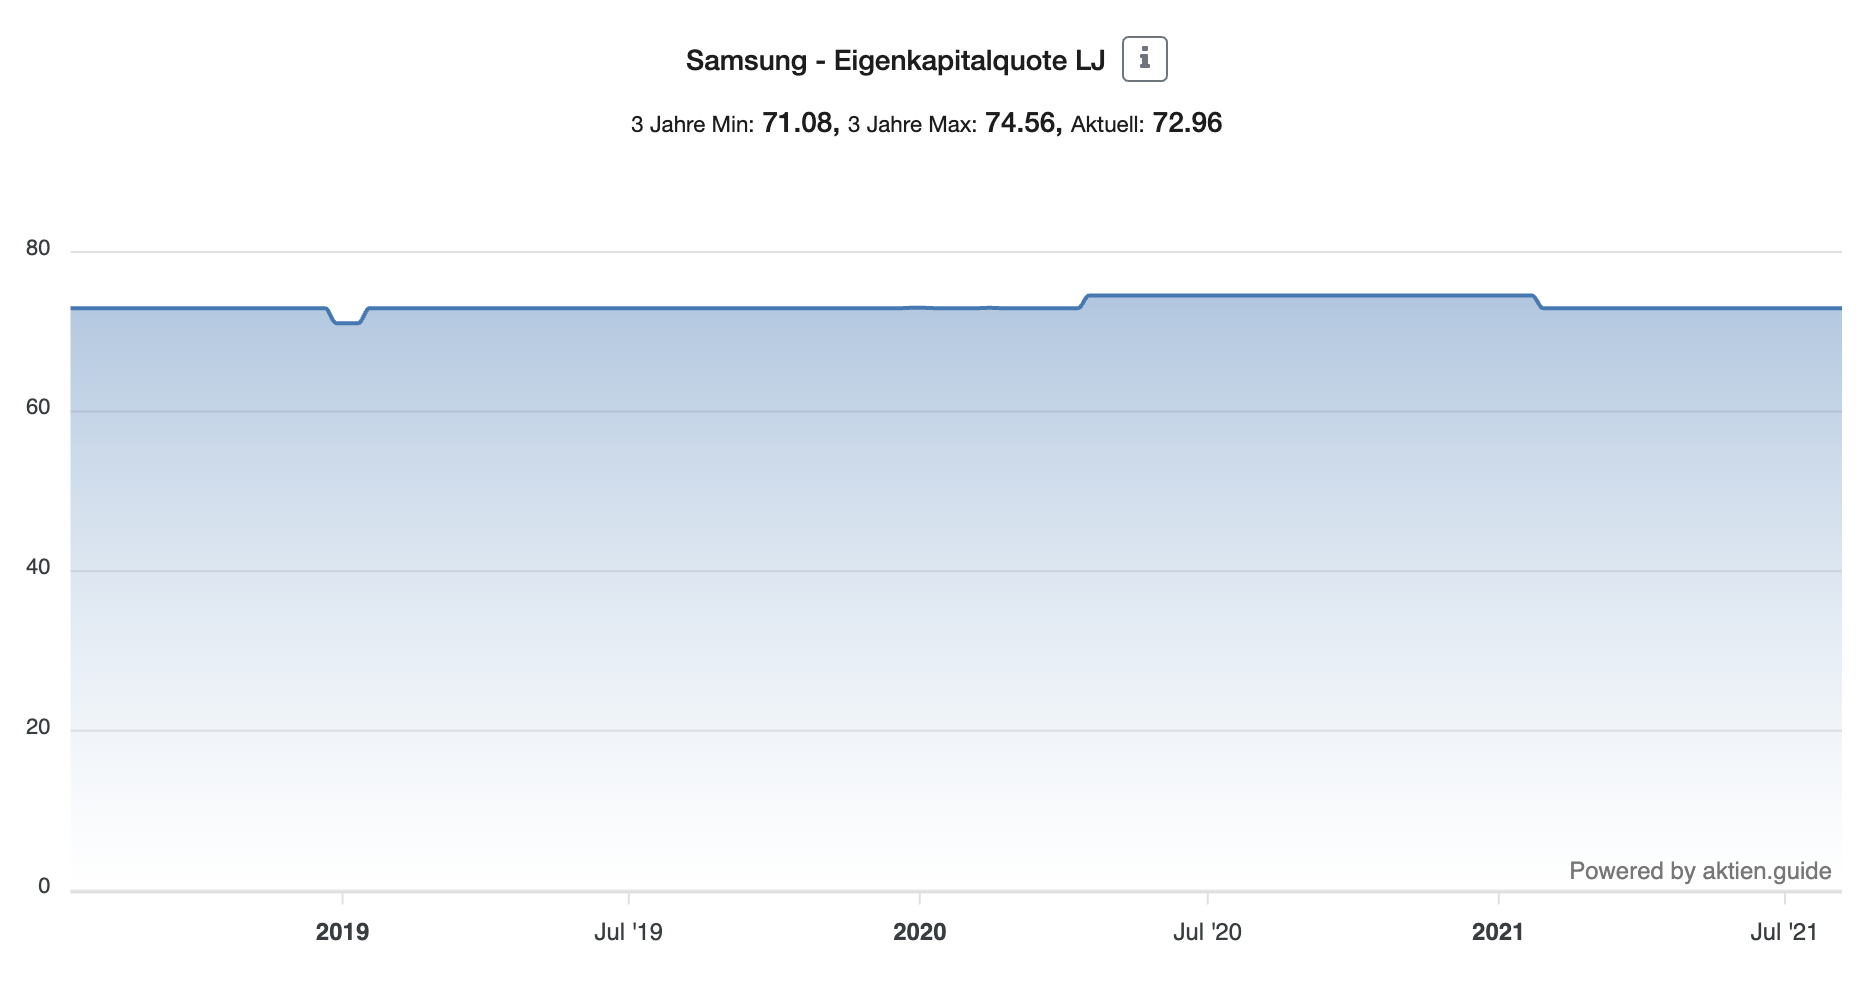 Samsung Aktie Eigenkapitalquote 3 Jahre